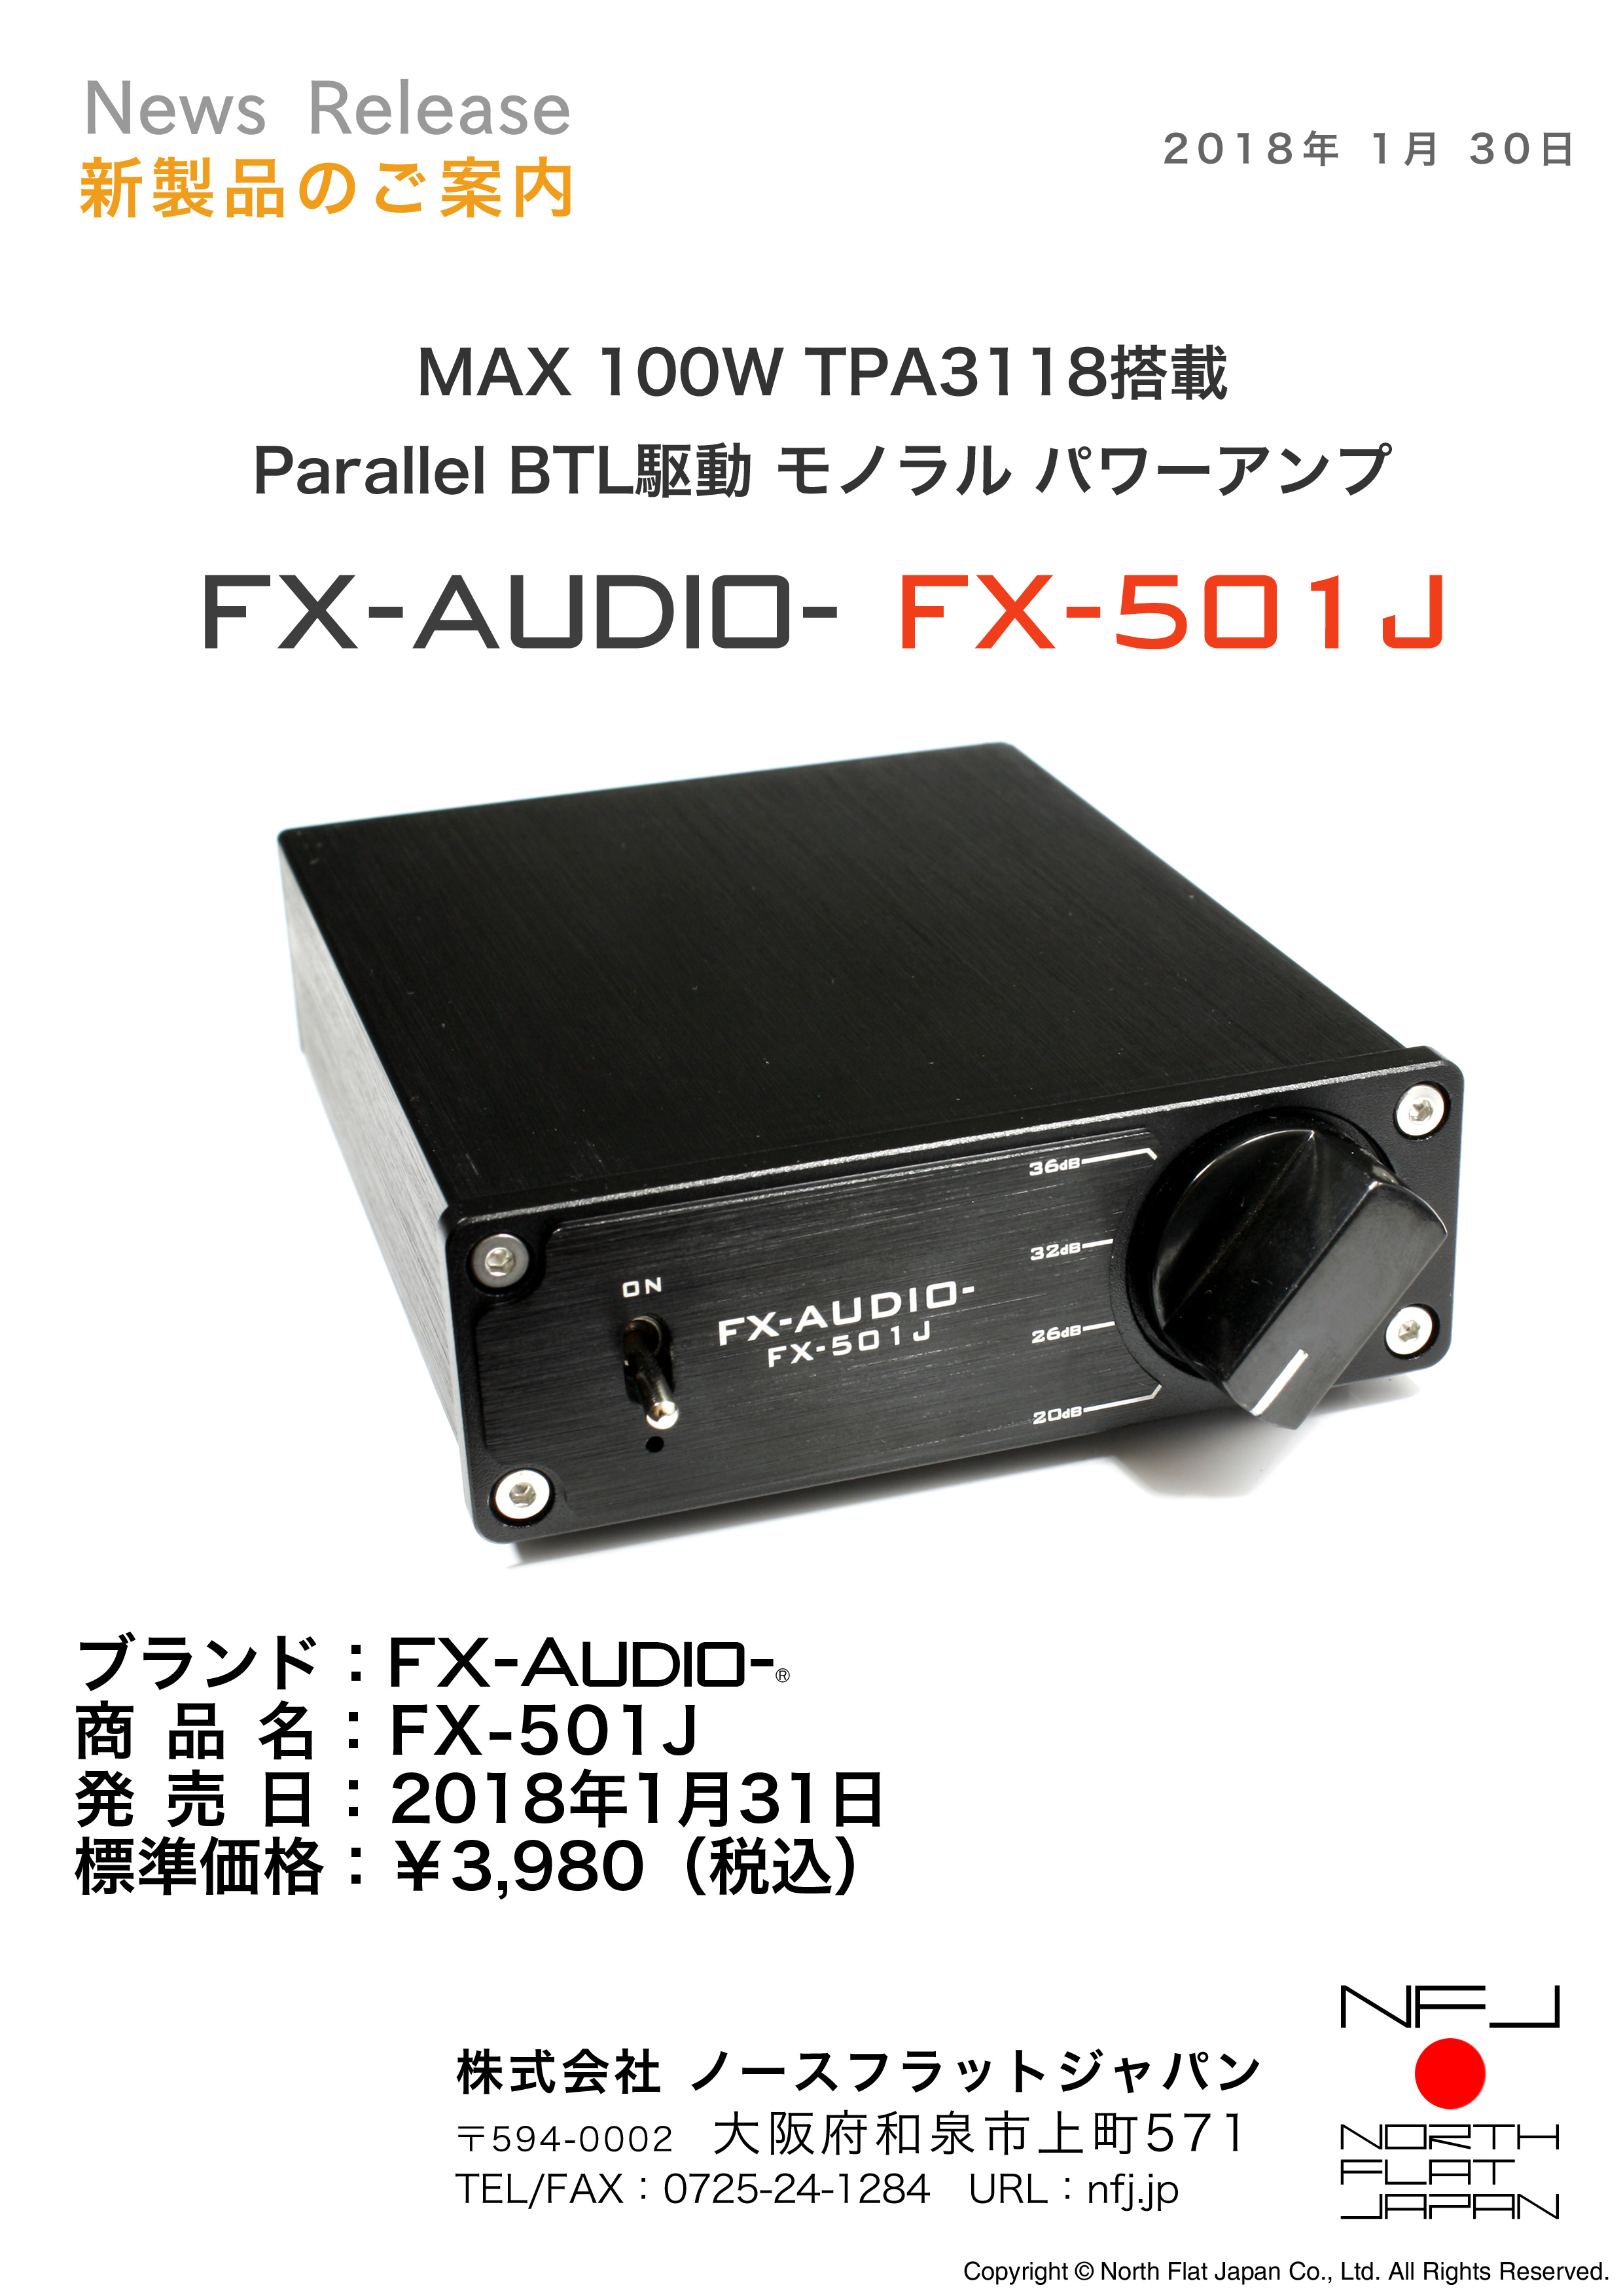 TPA3118搭載 PBTL駆動 MAX100W モノラル パワーアンプ FX-AUDIO- 『FX-501J』を新発売 | 新製品のご案内 |  North Flat Japan（株式会社ノースフラットジャパン公式）